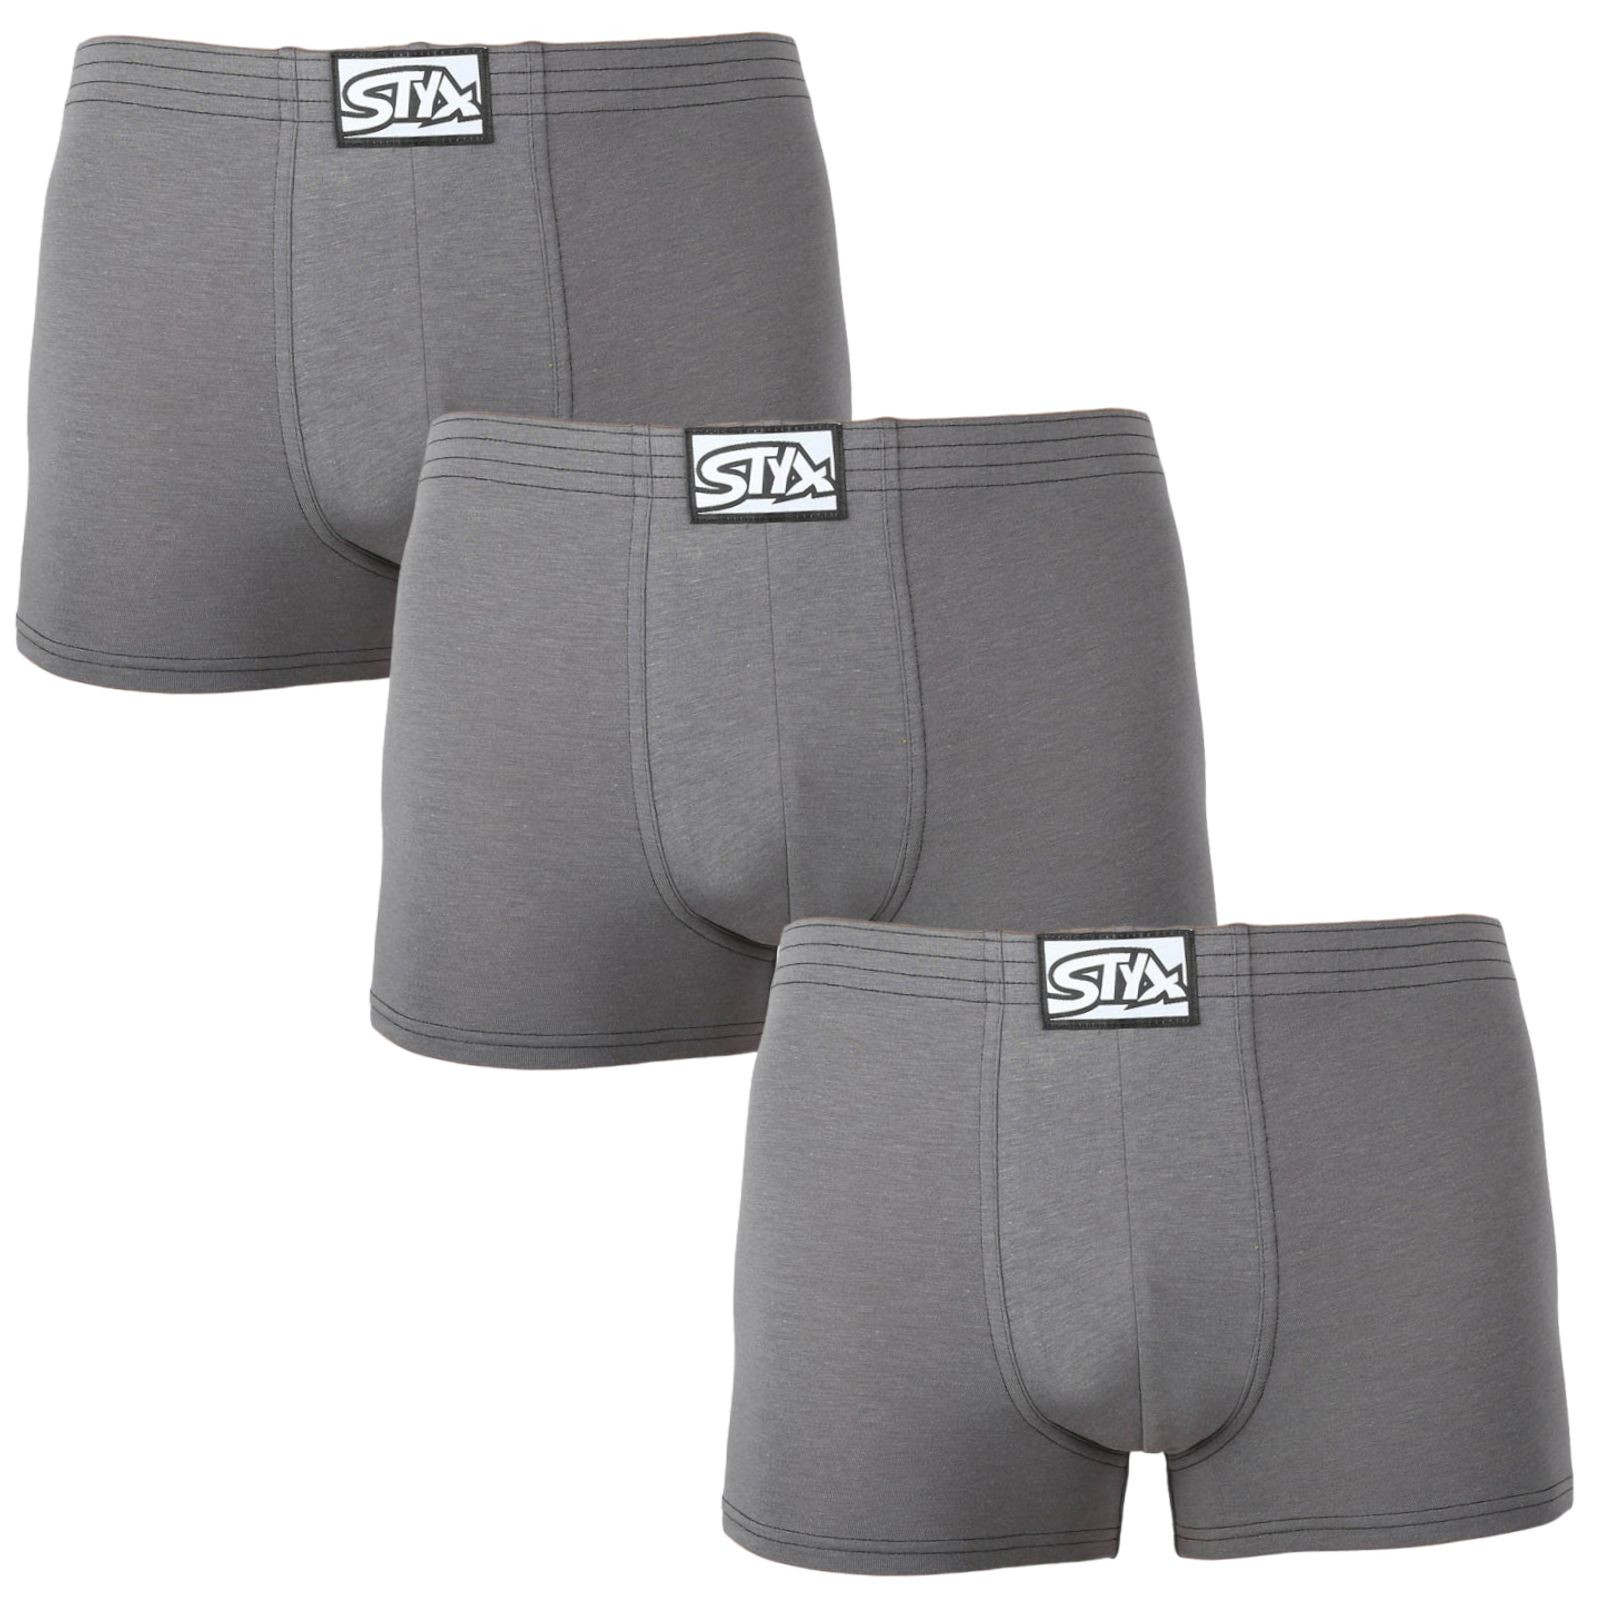 E-shop 3PACK pánské boxerky Styx klasická guma tmavě šedé